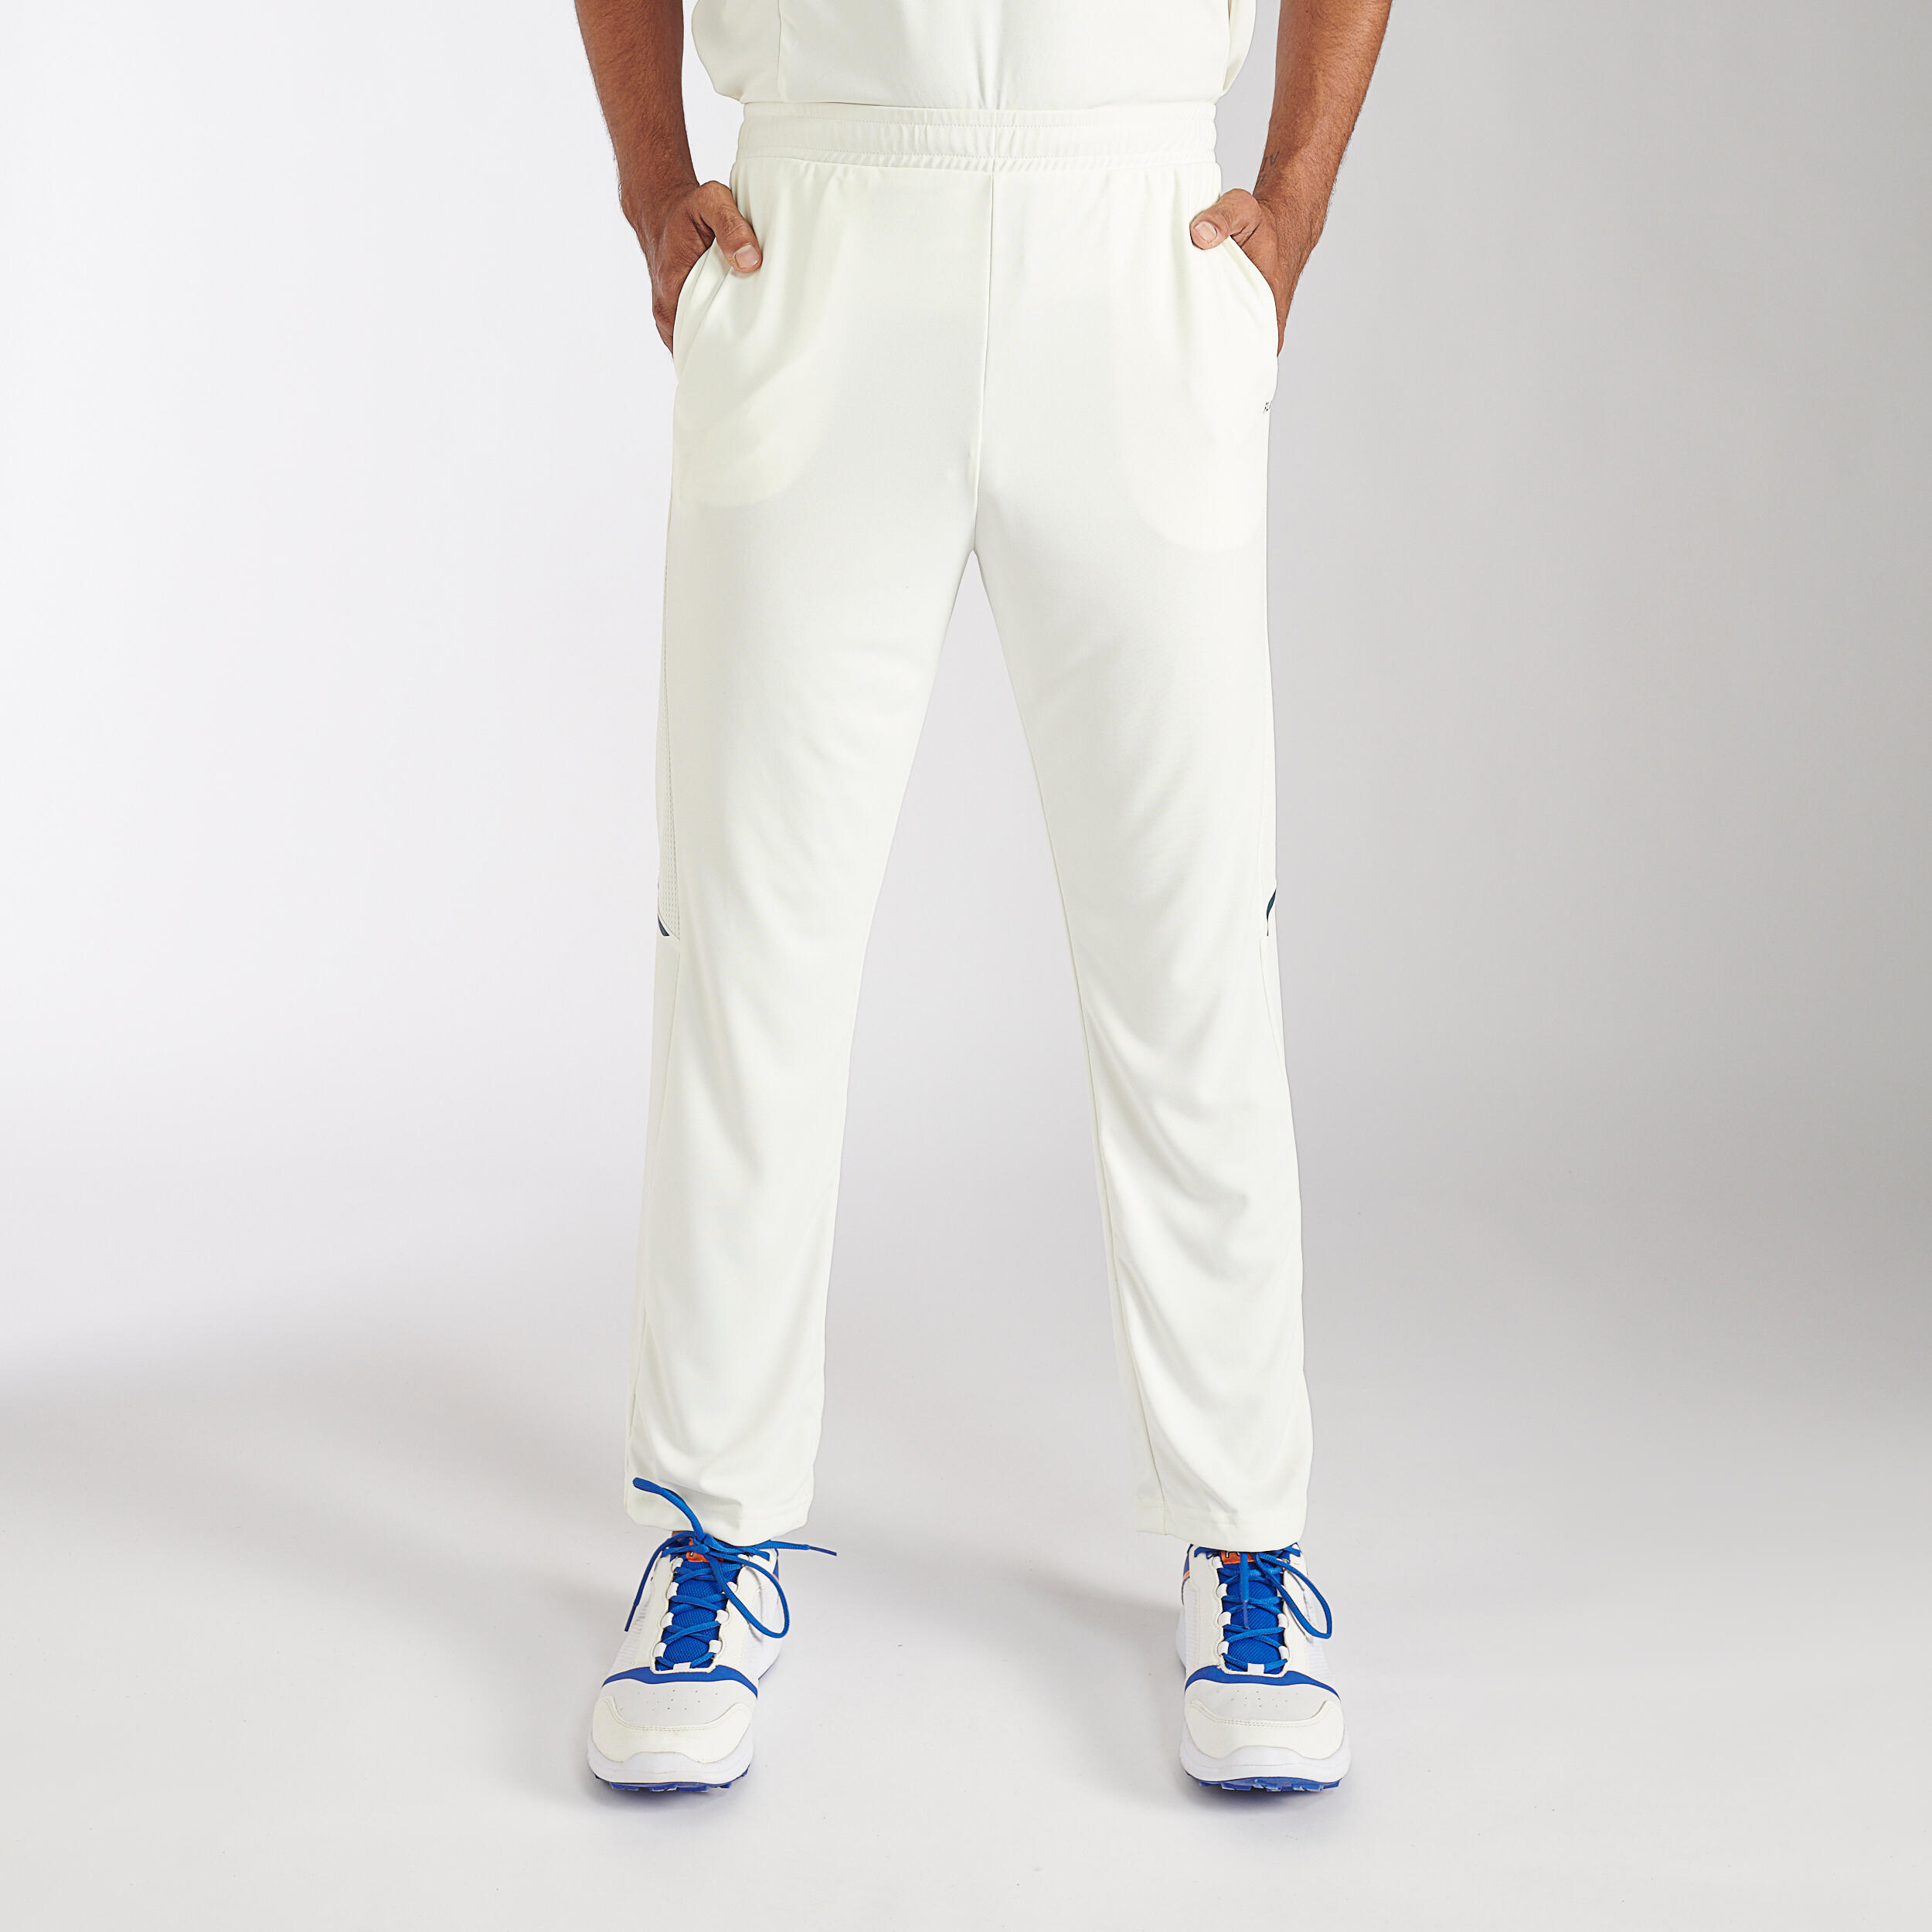 Buy Navy Cricket Track Pants online  Looksgudin